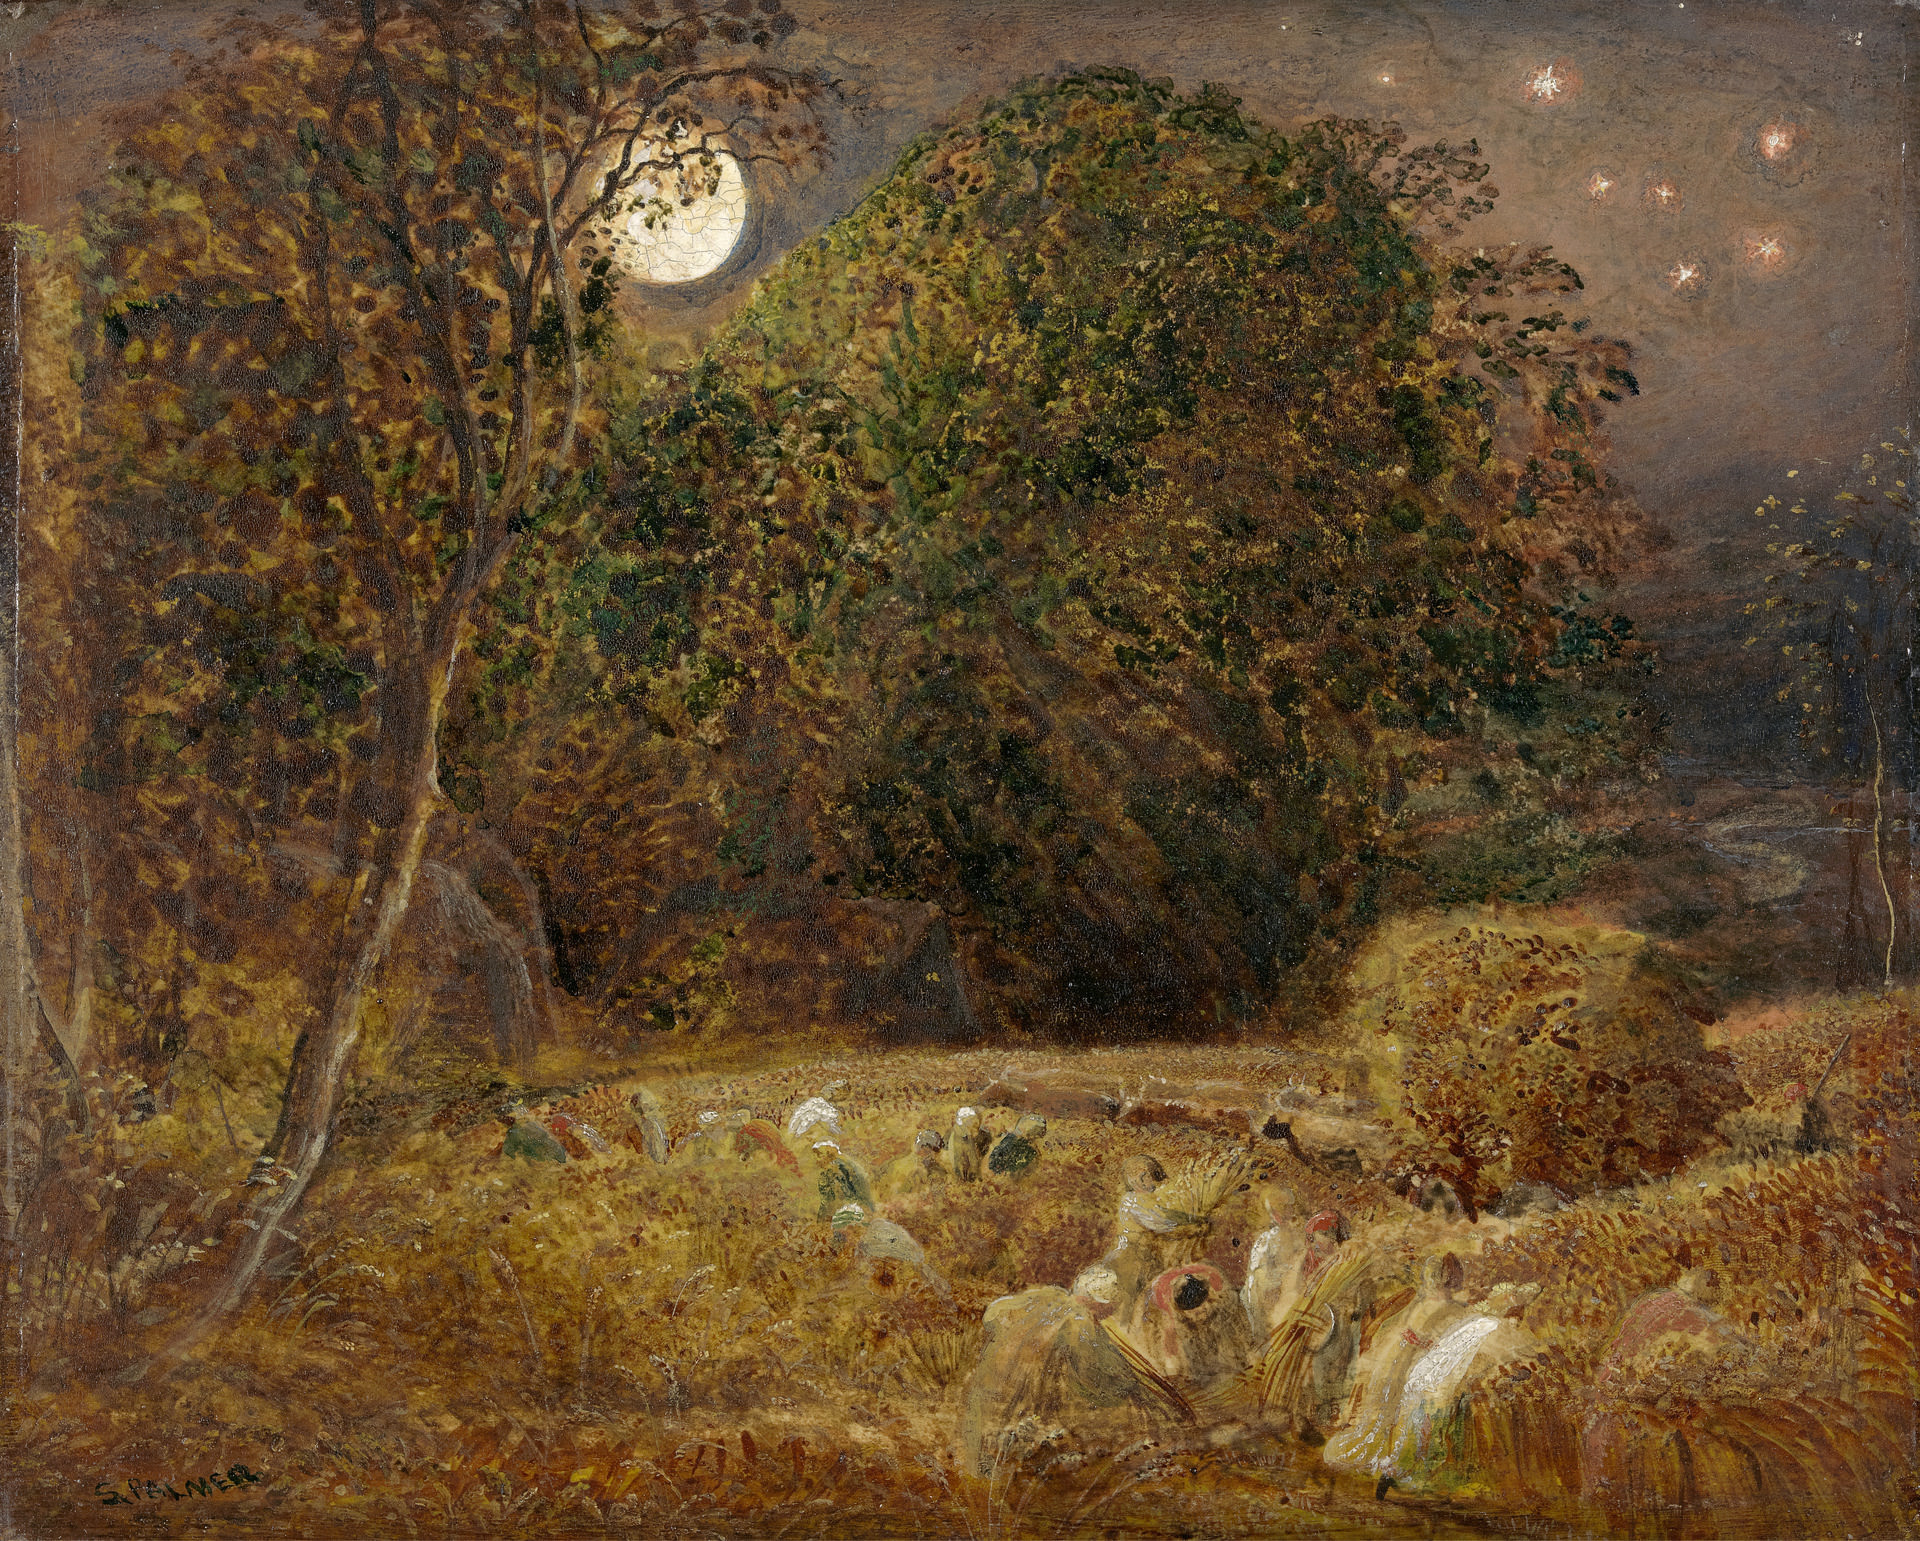 Tranh The Harvest Moon - Đêm trăng mùa thu hoạch - Samuel Palmer